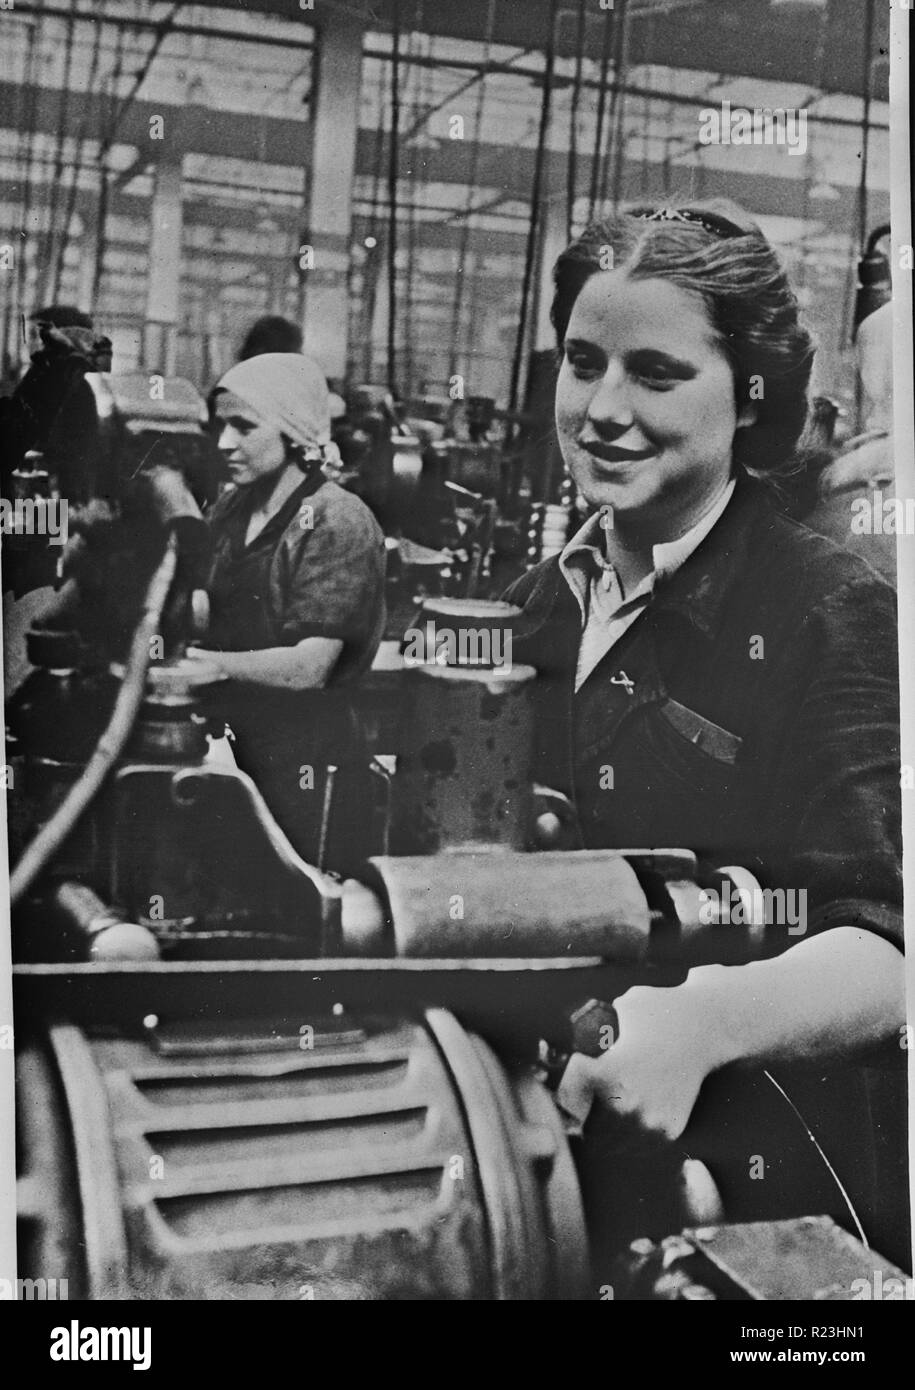 Traitement des femmes au tour dans une usine dans l'URSS (Union des Républiques socialistes soviétiques) c.1940 Banque D'Images